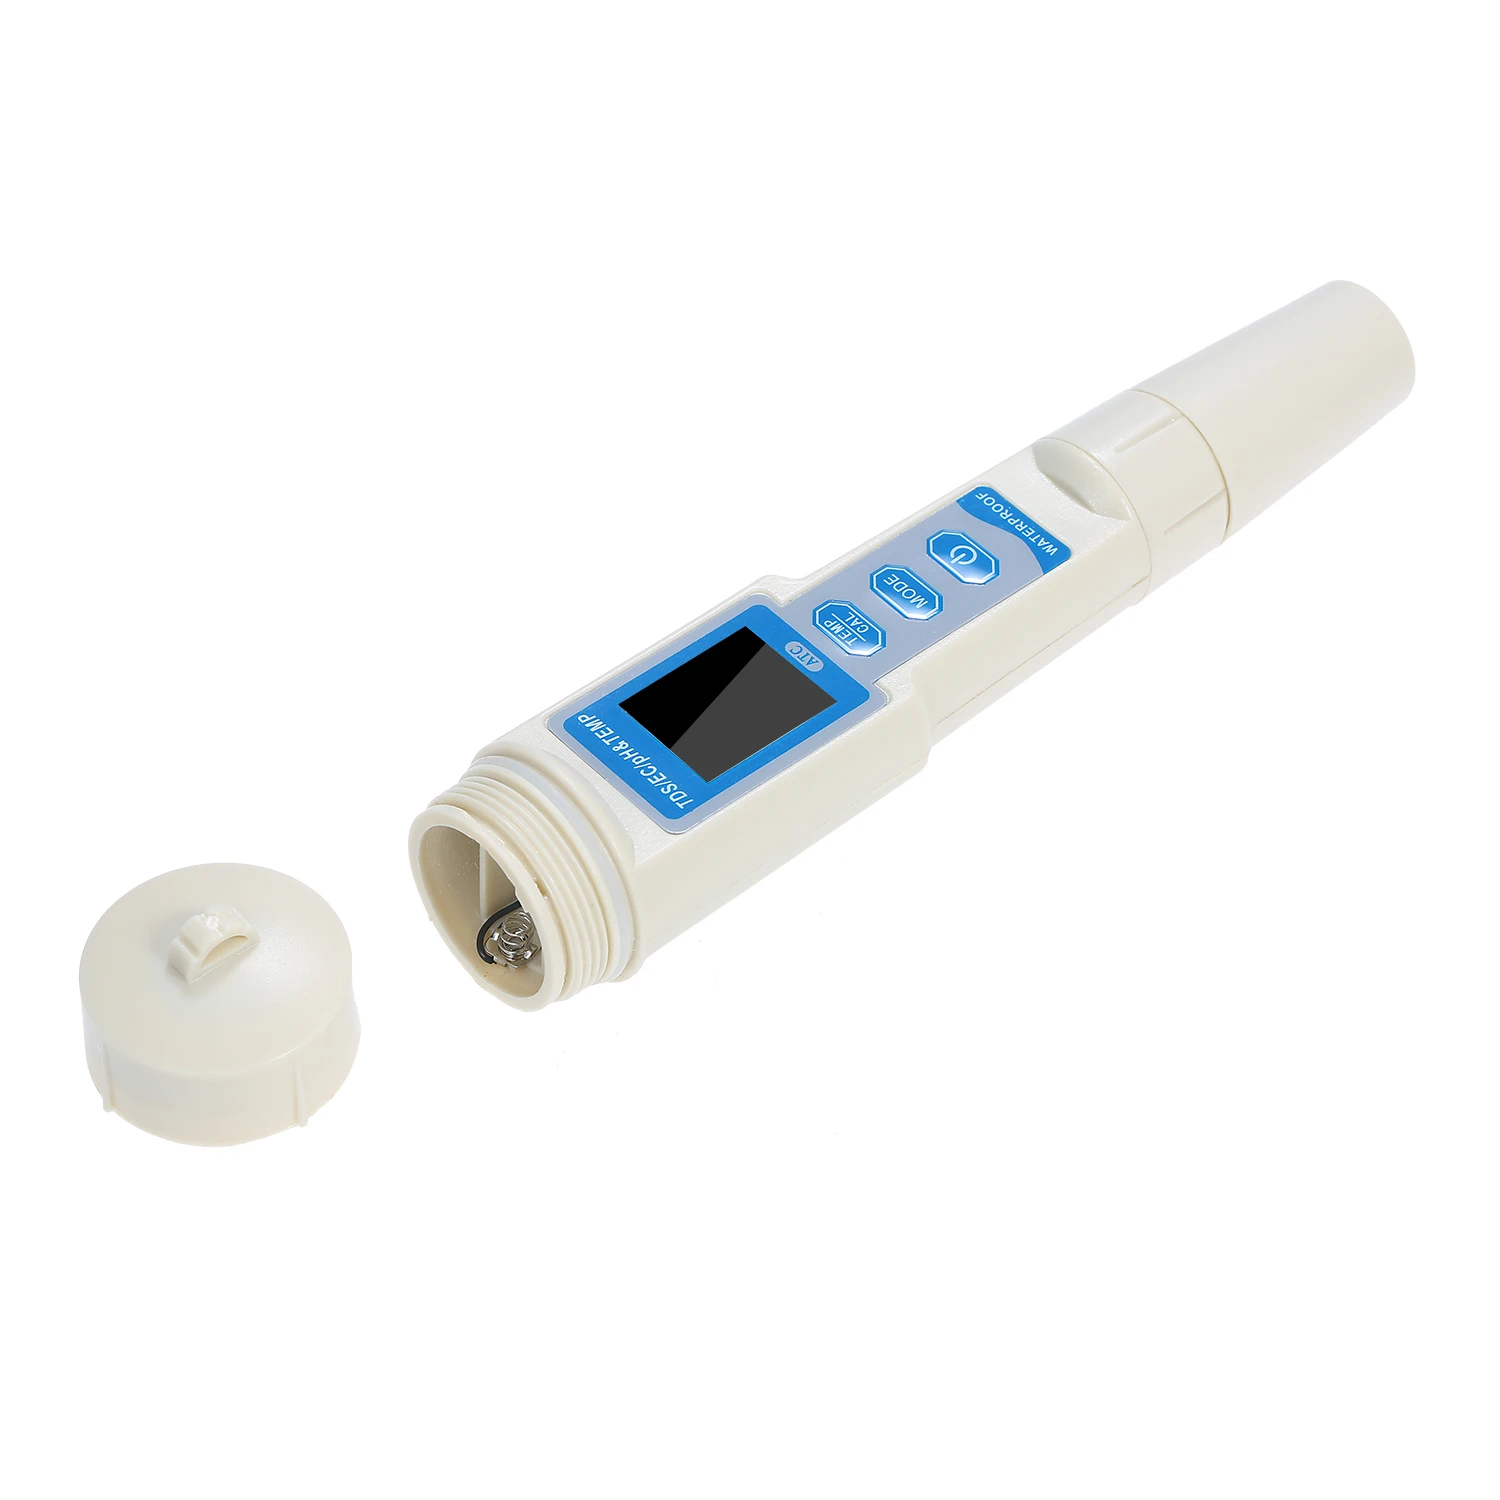 

4-в-1 тестер качества воды ручка Водонепроницаемый анализ качества воды инструмент измерения pН/EC/TDS Температура метр рН-метр тестер ручка